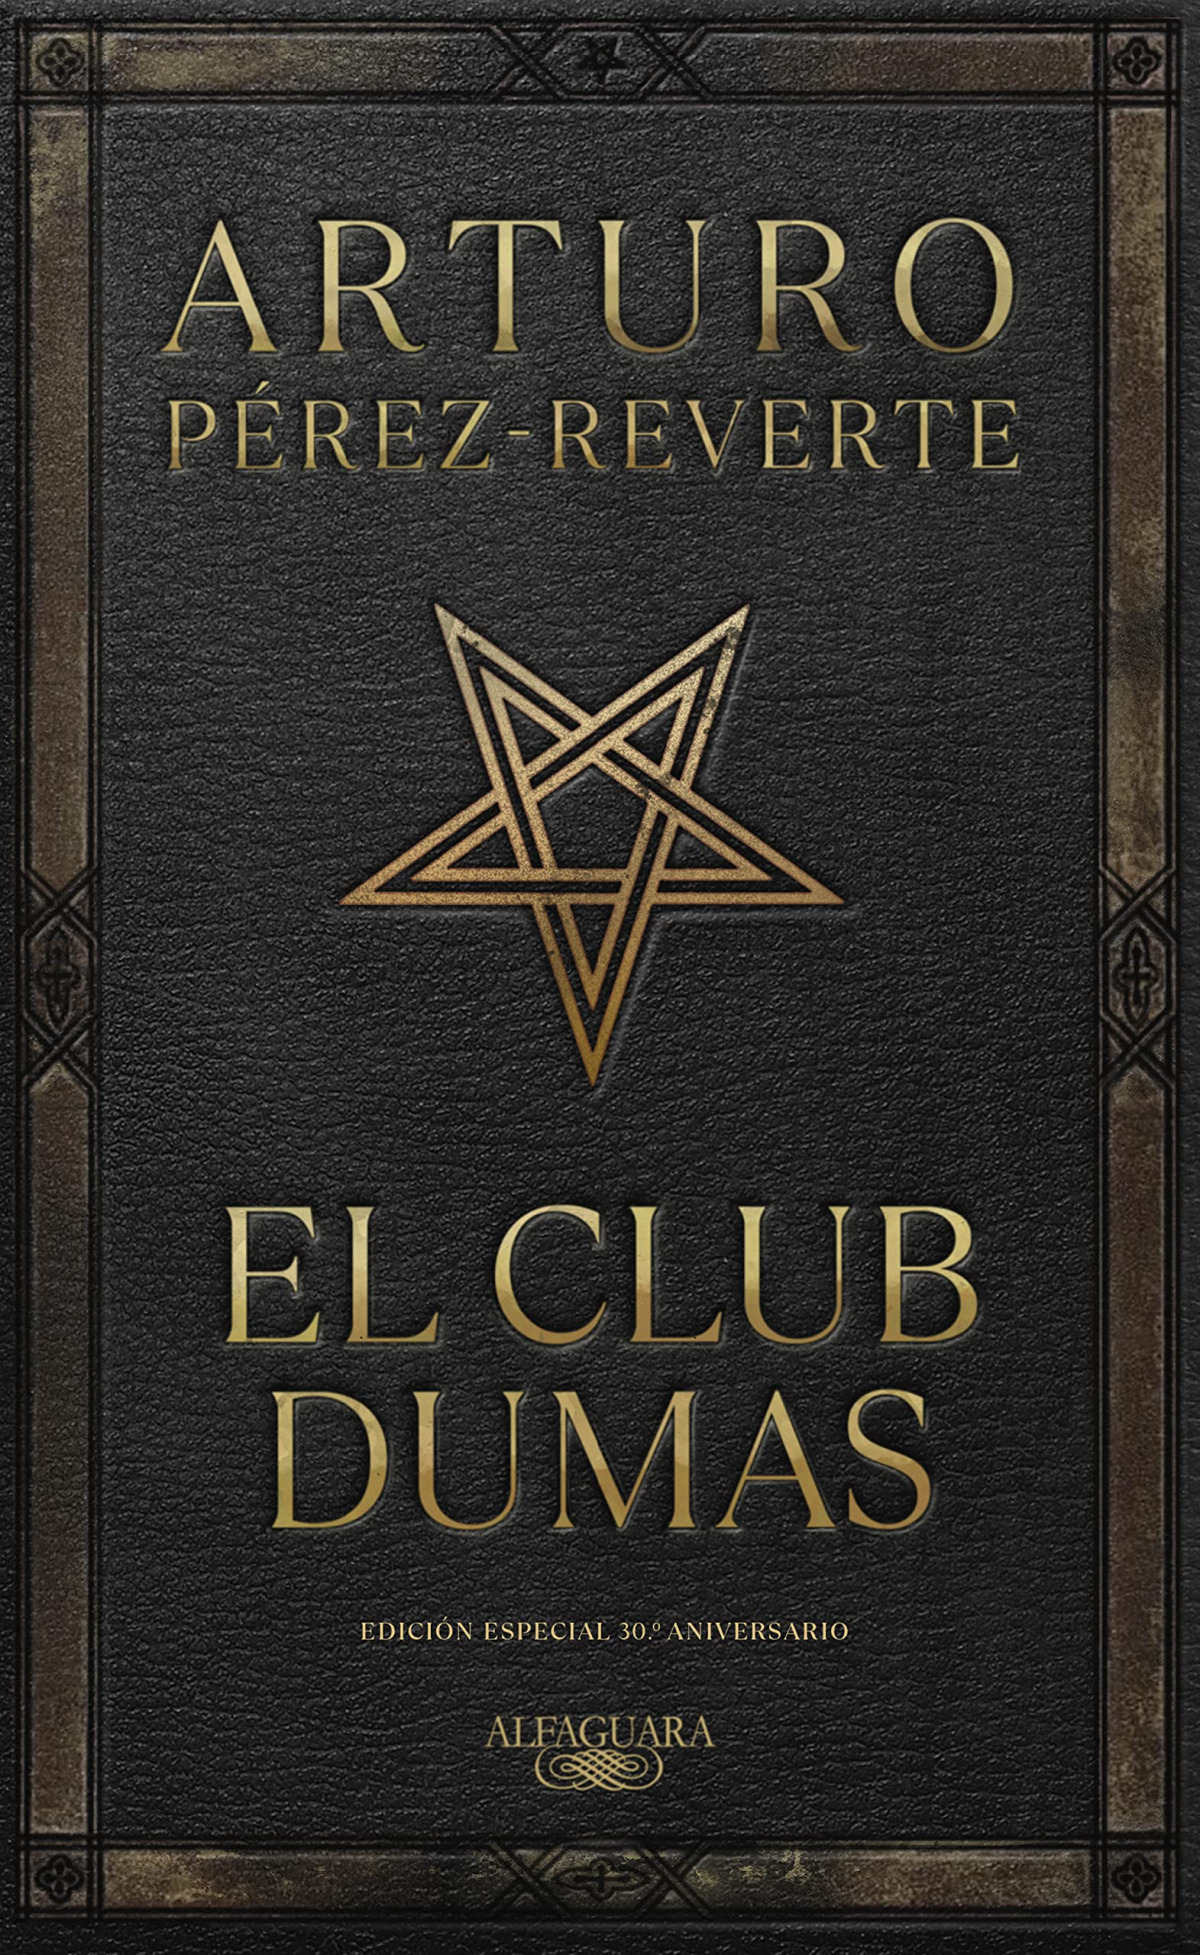 El Club Dumas, treinta años de felicidad